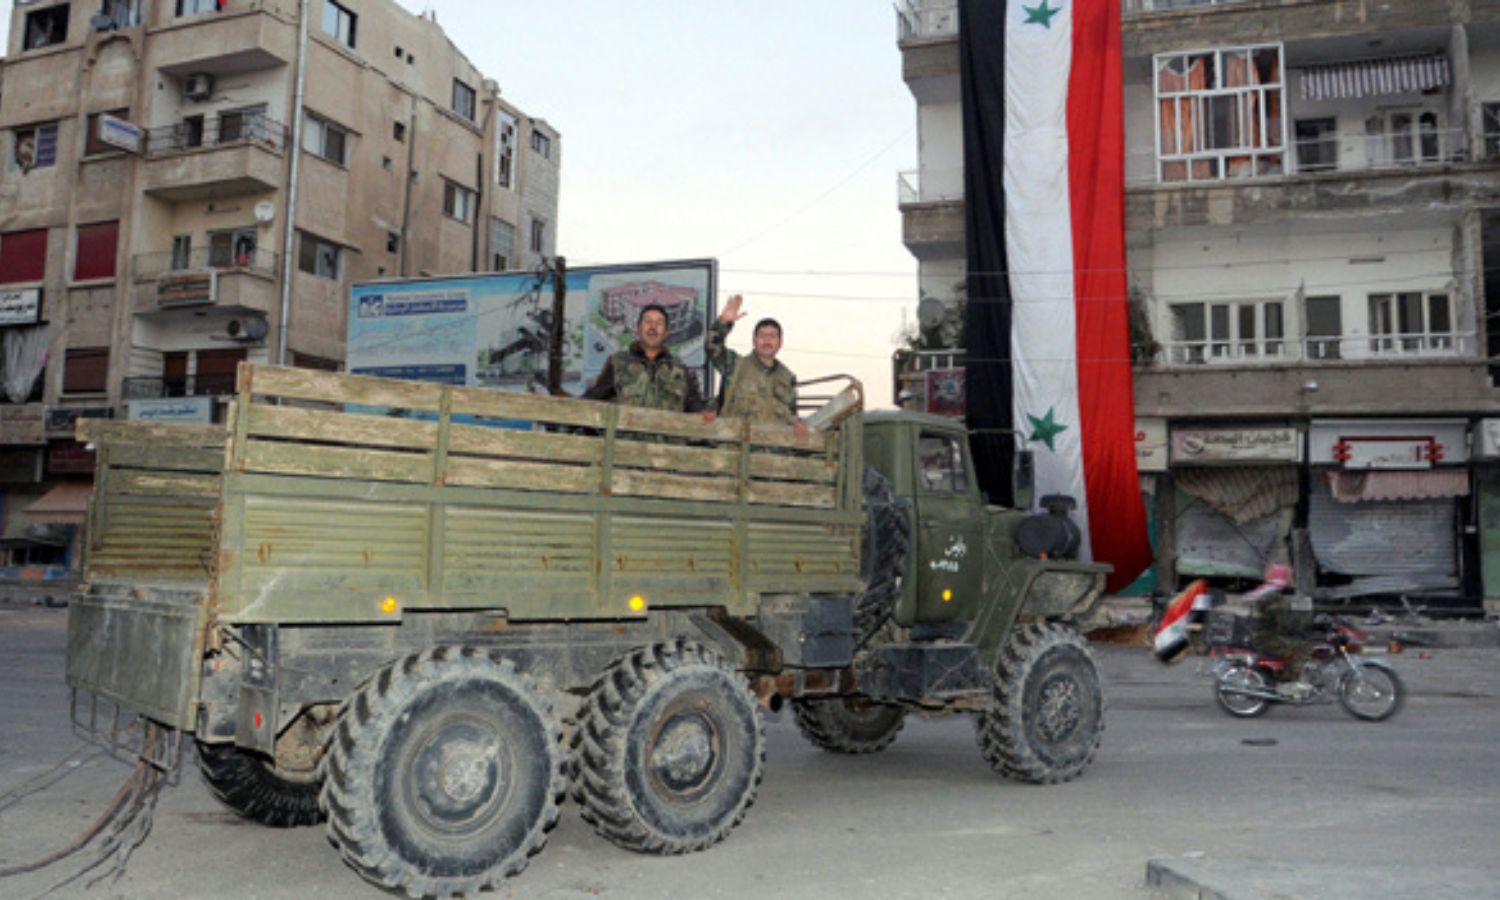 عناصر من قوات النظام السوري يستقلون مركبة عسكرية داخل مدينة النبك بريف دمشق، بعد السيطرة عليها- 9 من كانون الأول 2013 (AFP)